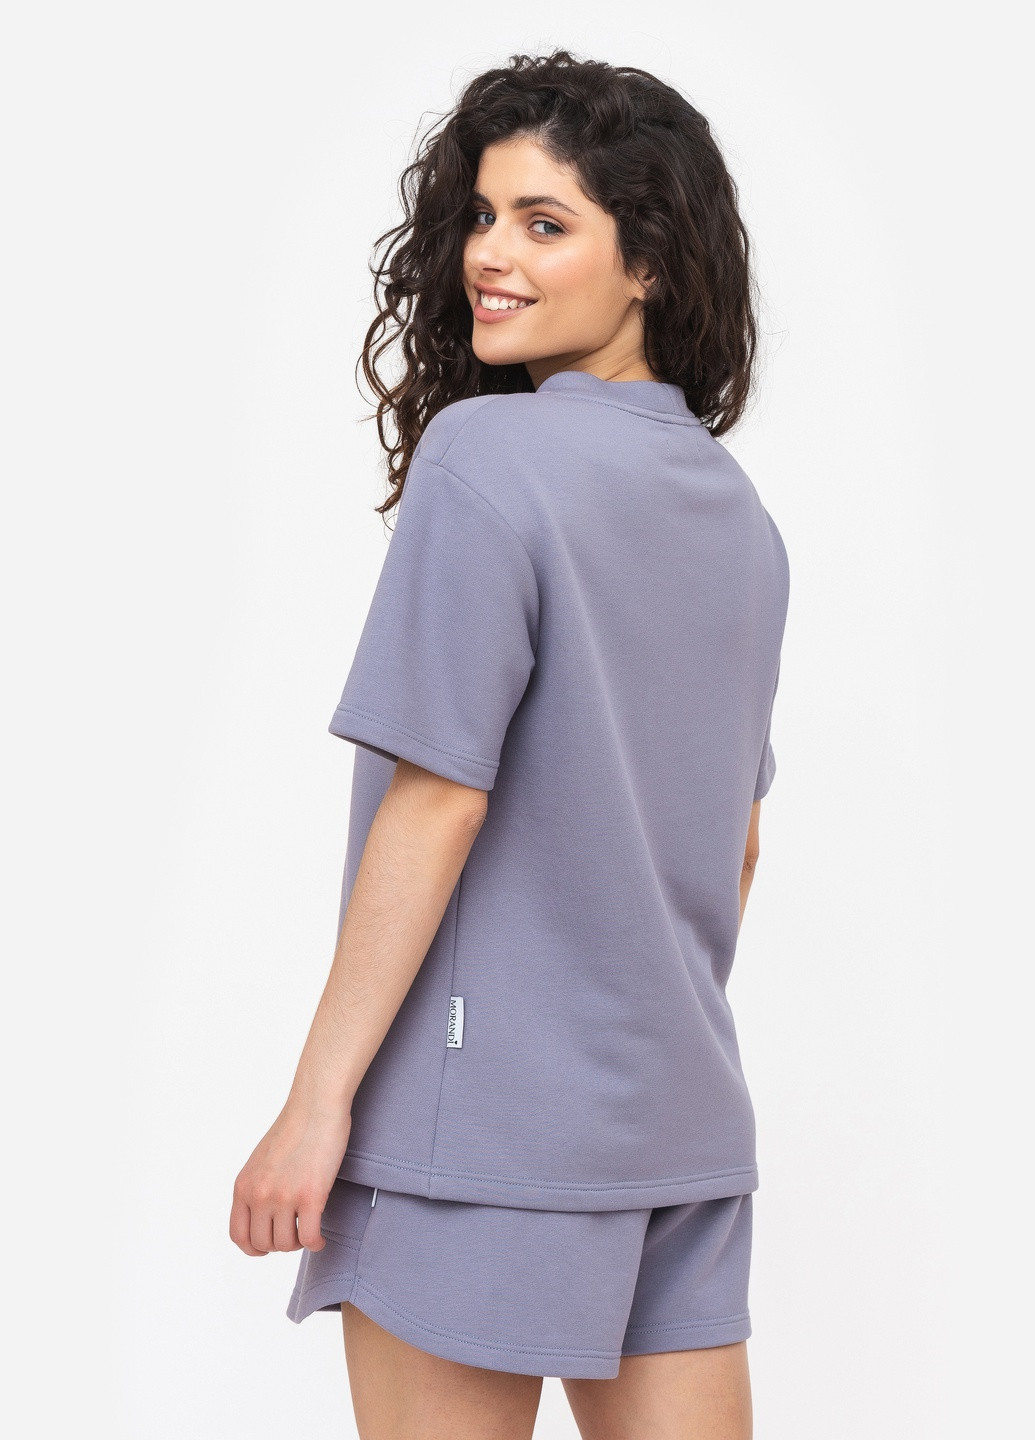 Длинная футболка трехнить серо-фиолетовый цвет MORANDI - (259295901)